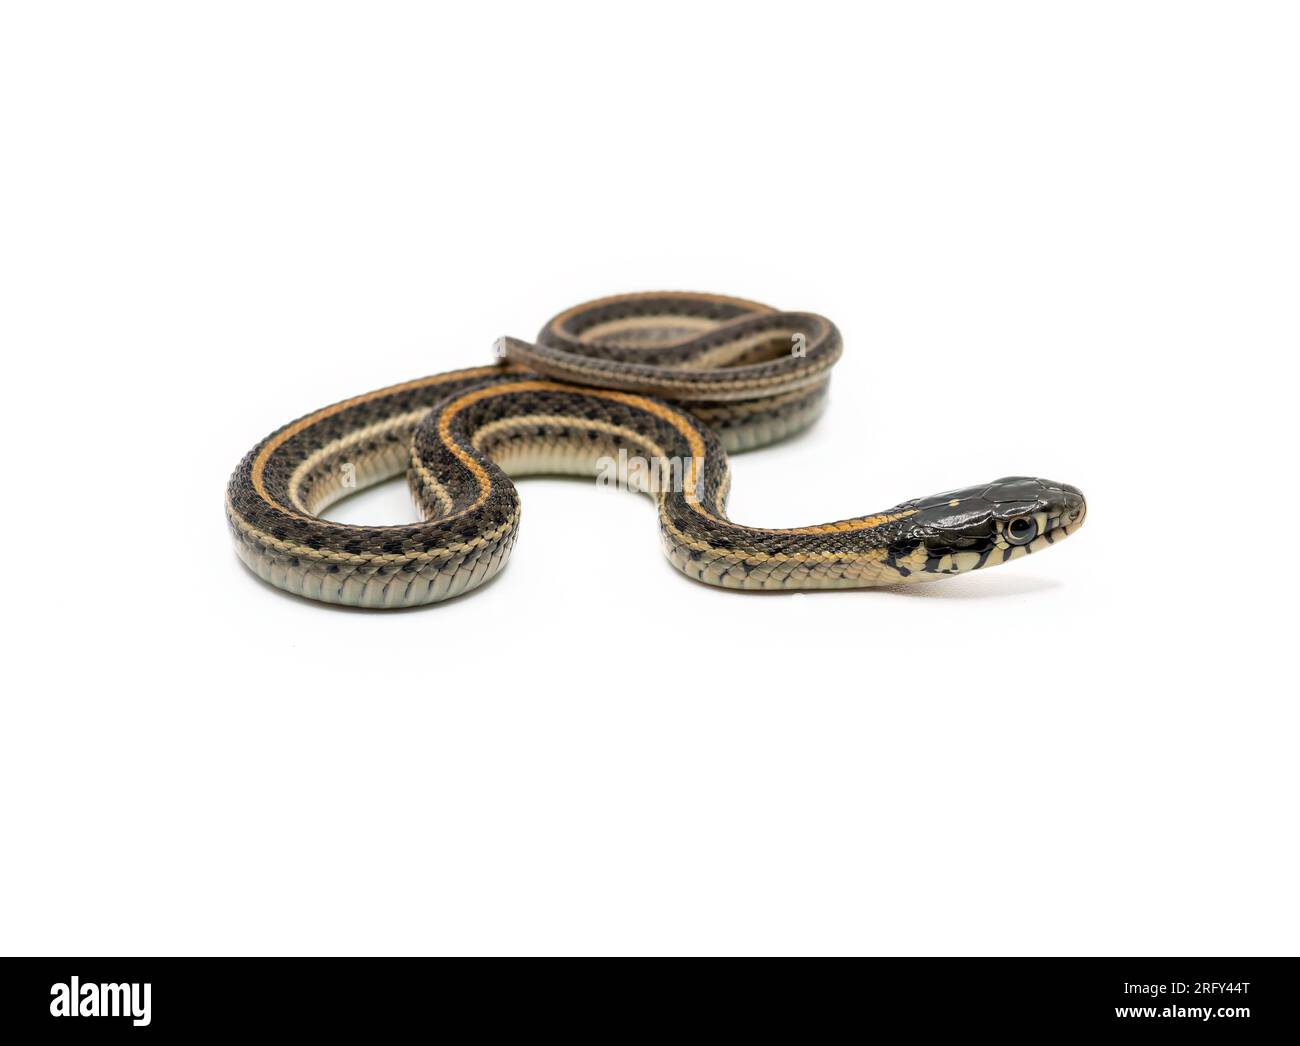 Un beau serpent de jarretière juvénile est isolé et photographié sur un fond blanc. Banque D'Images